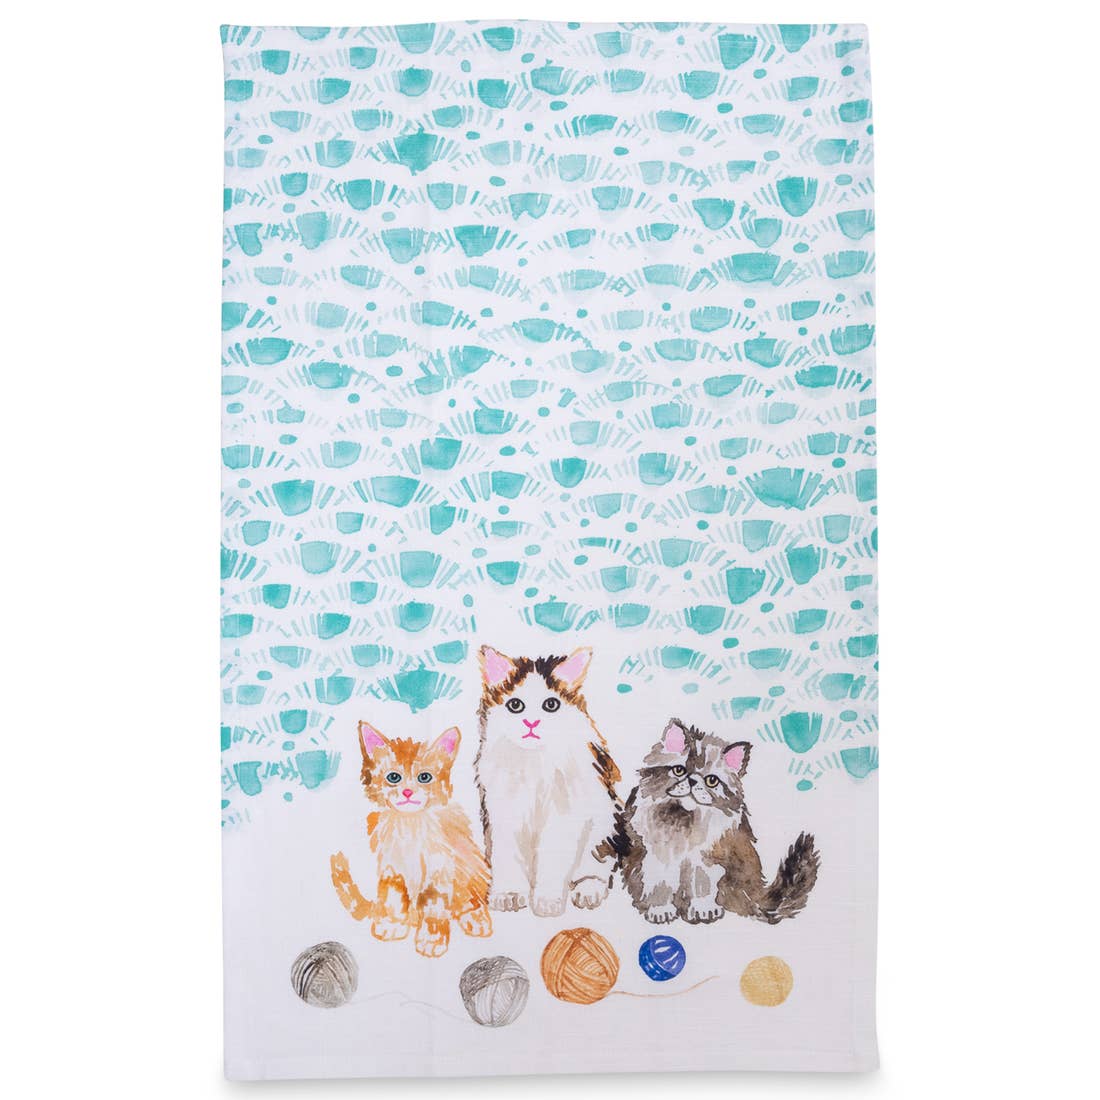 Kittens Tea towel